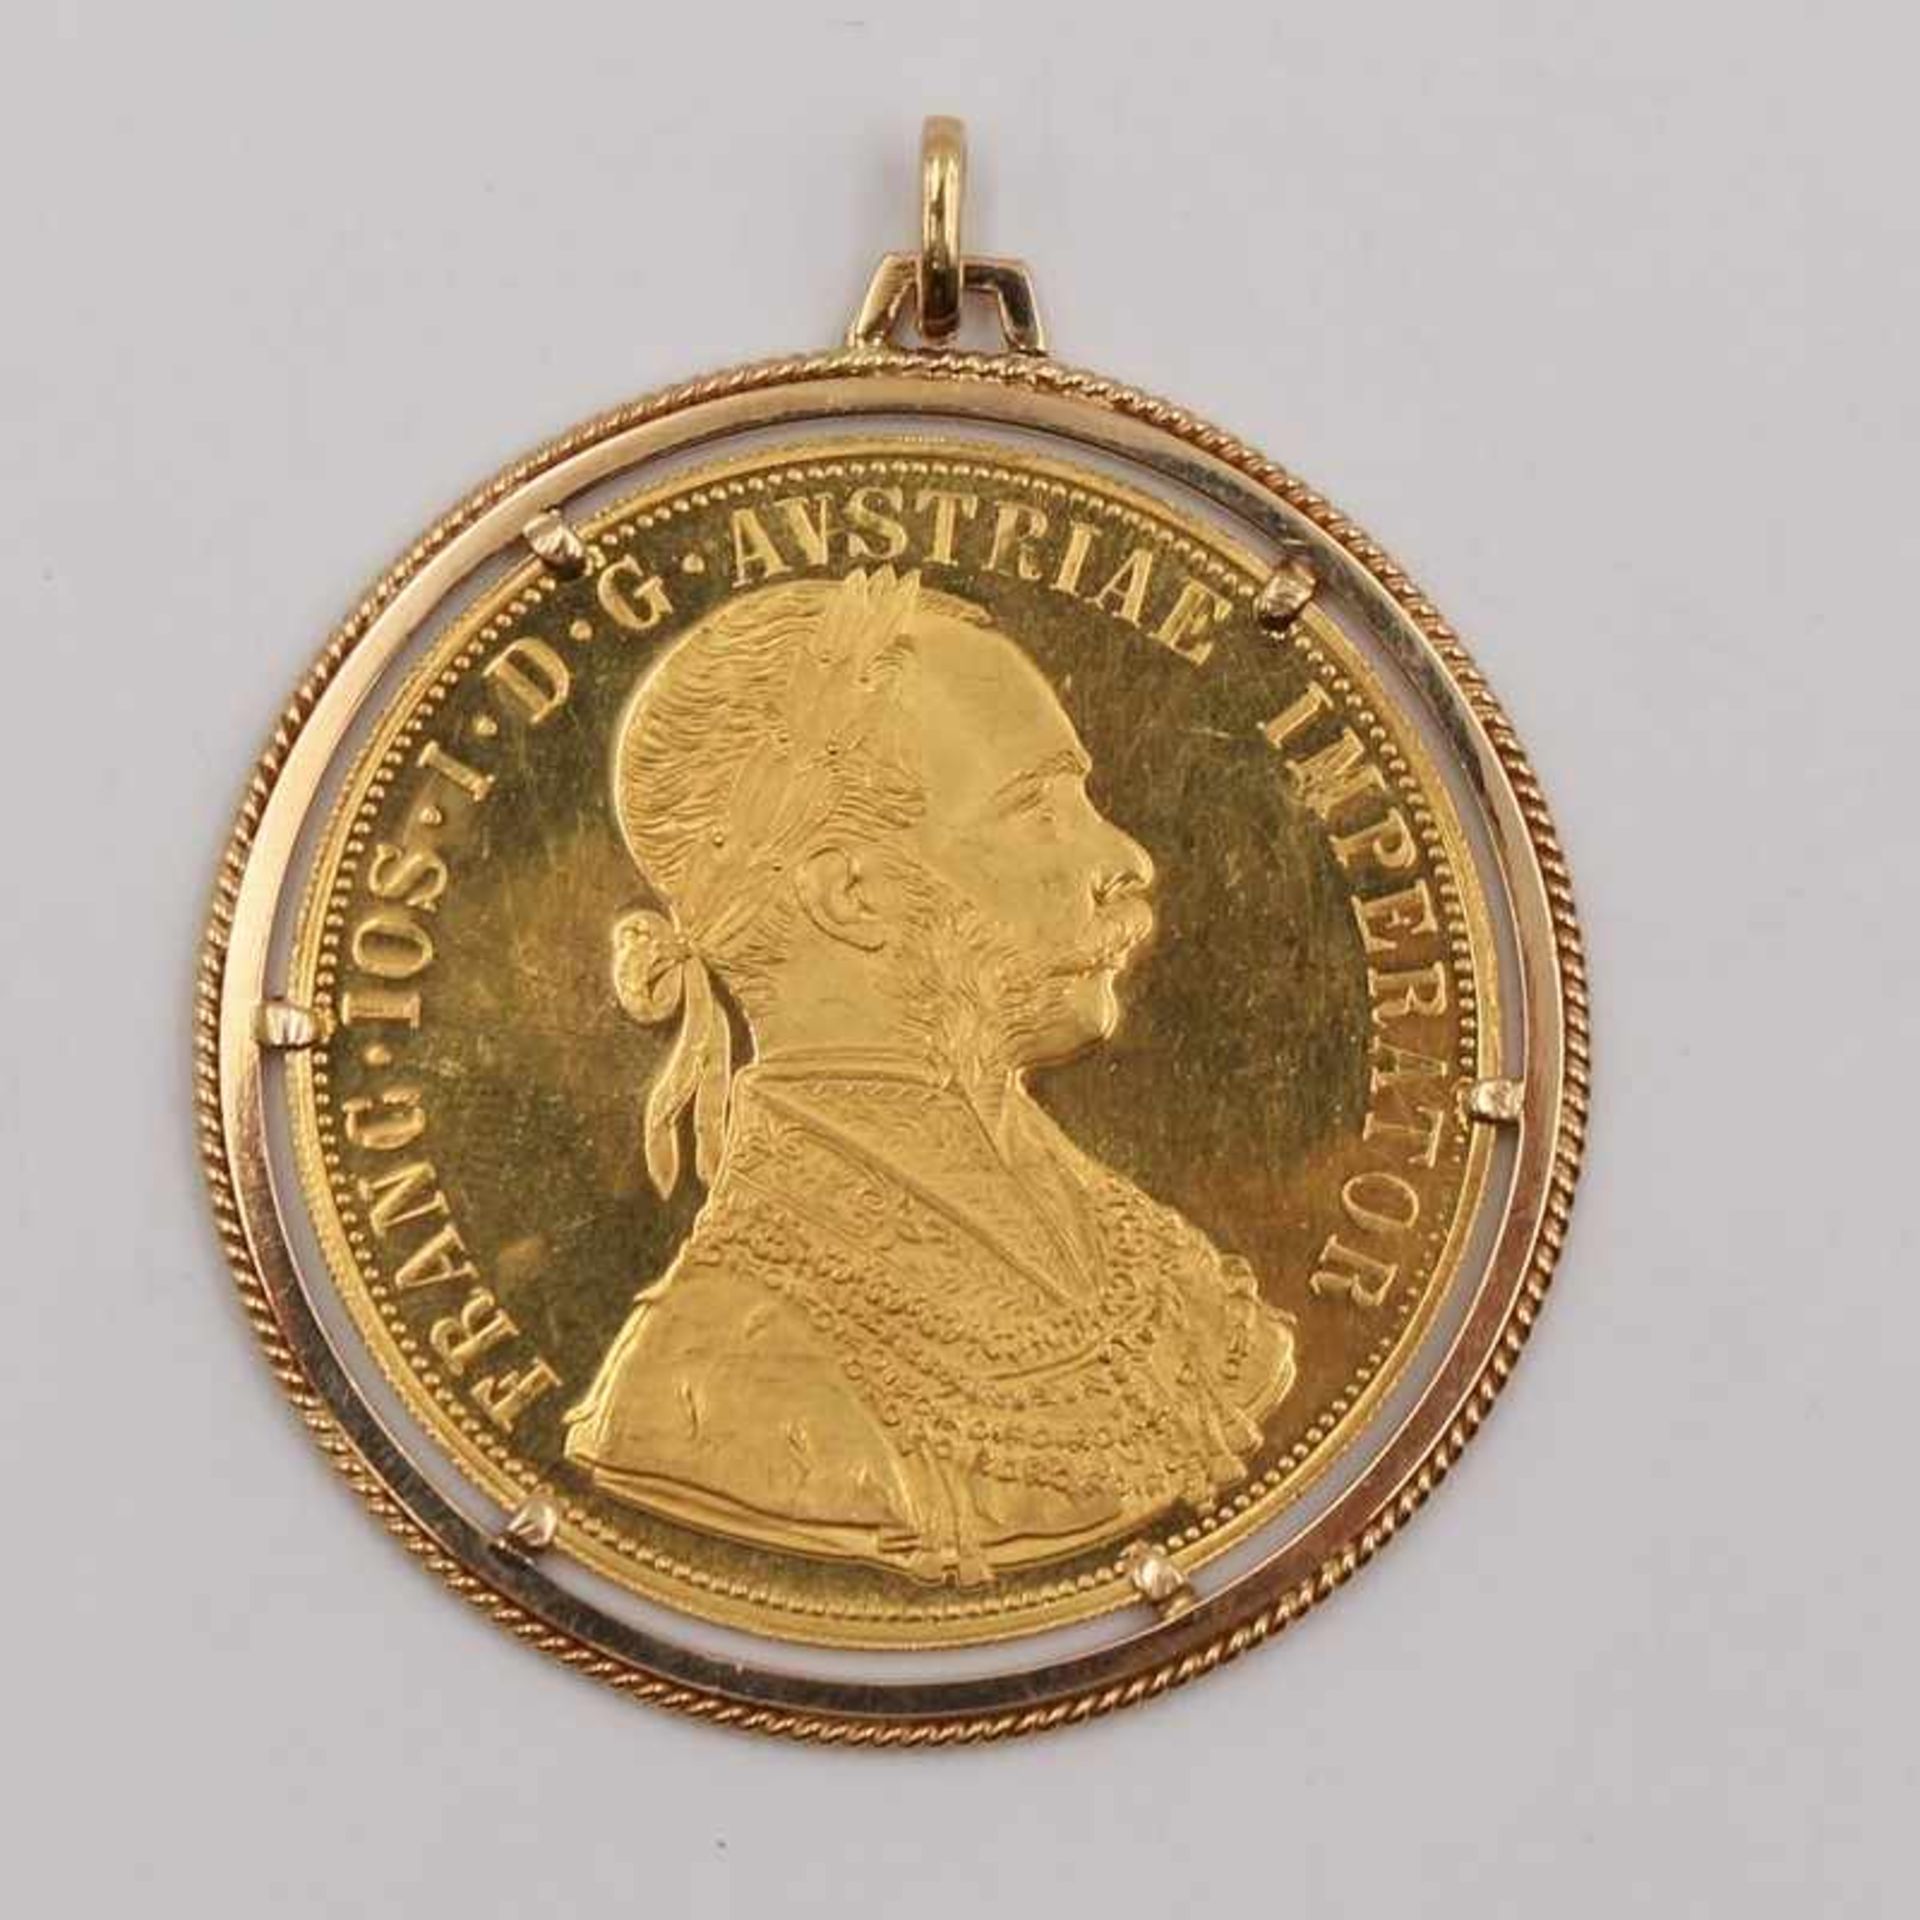 Anhänger - Medaille GG 750, runde Fassung besetzt mit einer Medaille, vs "Franc Ios I D G Avstriae